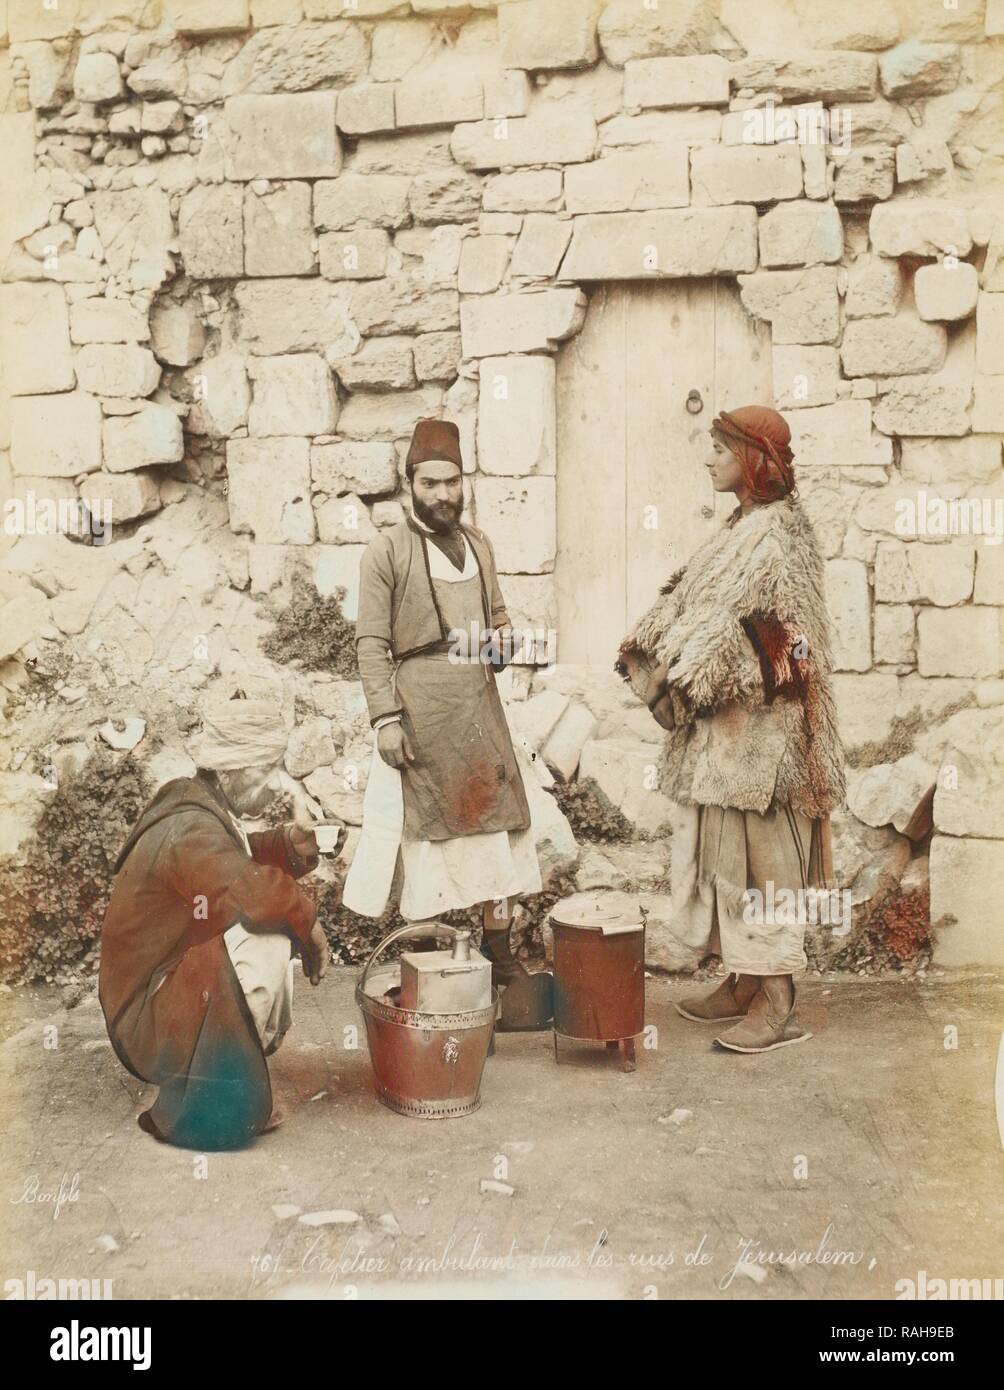 Cafetier ambulant dans les rues de Jérusalem, orientalist photography, Bonfils, Félix, 1831-1885, 1880s. Reimagined Stock Photo